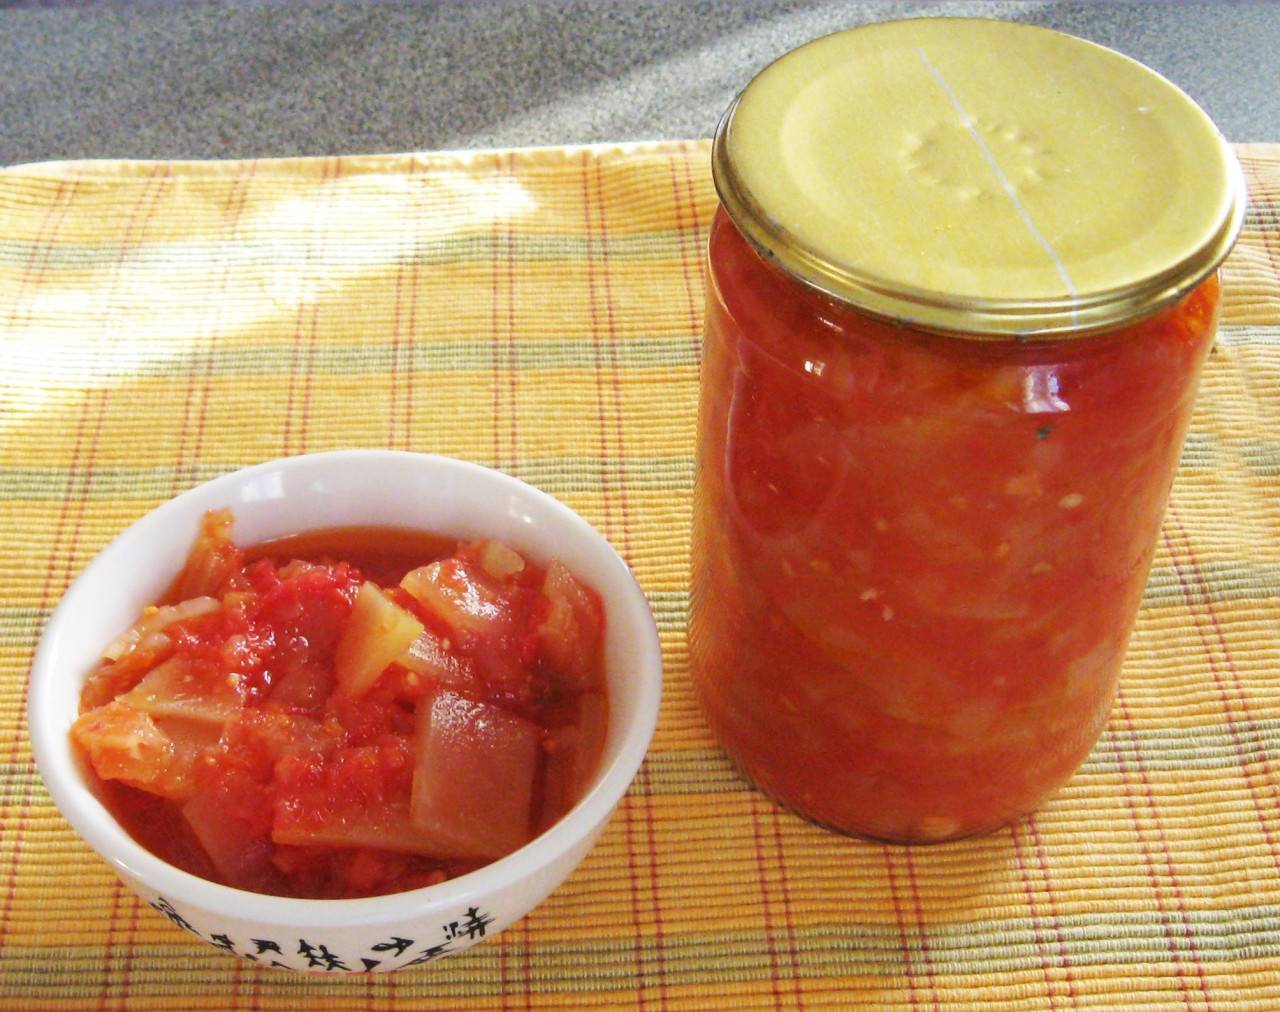 Тещин язык из кабачков с помидорами закуска рецепт с фото пошагово